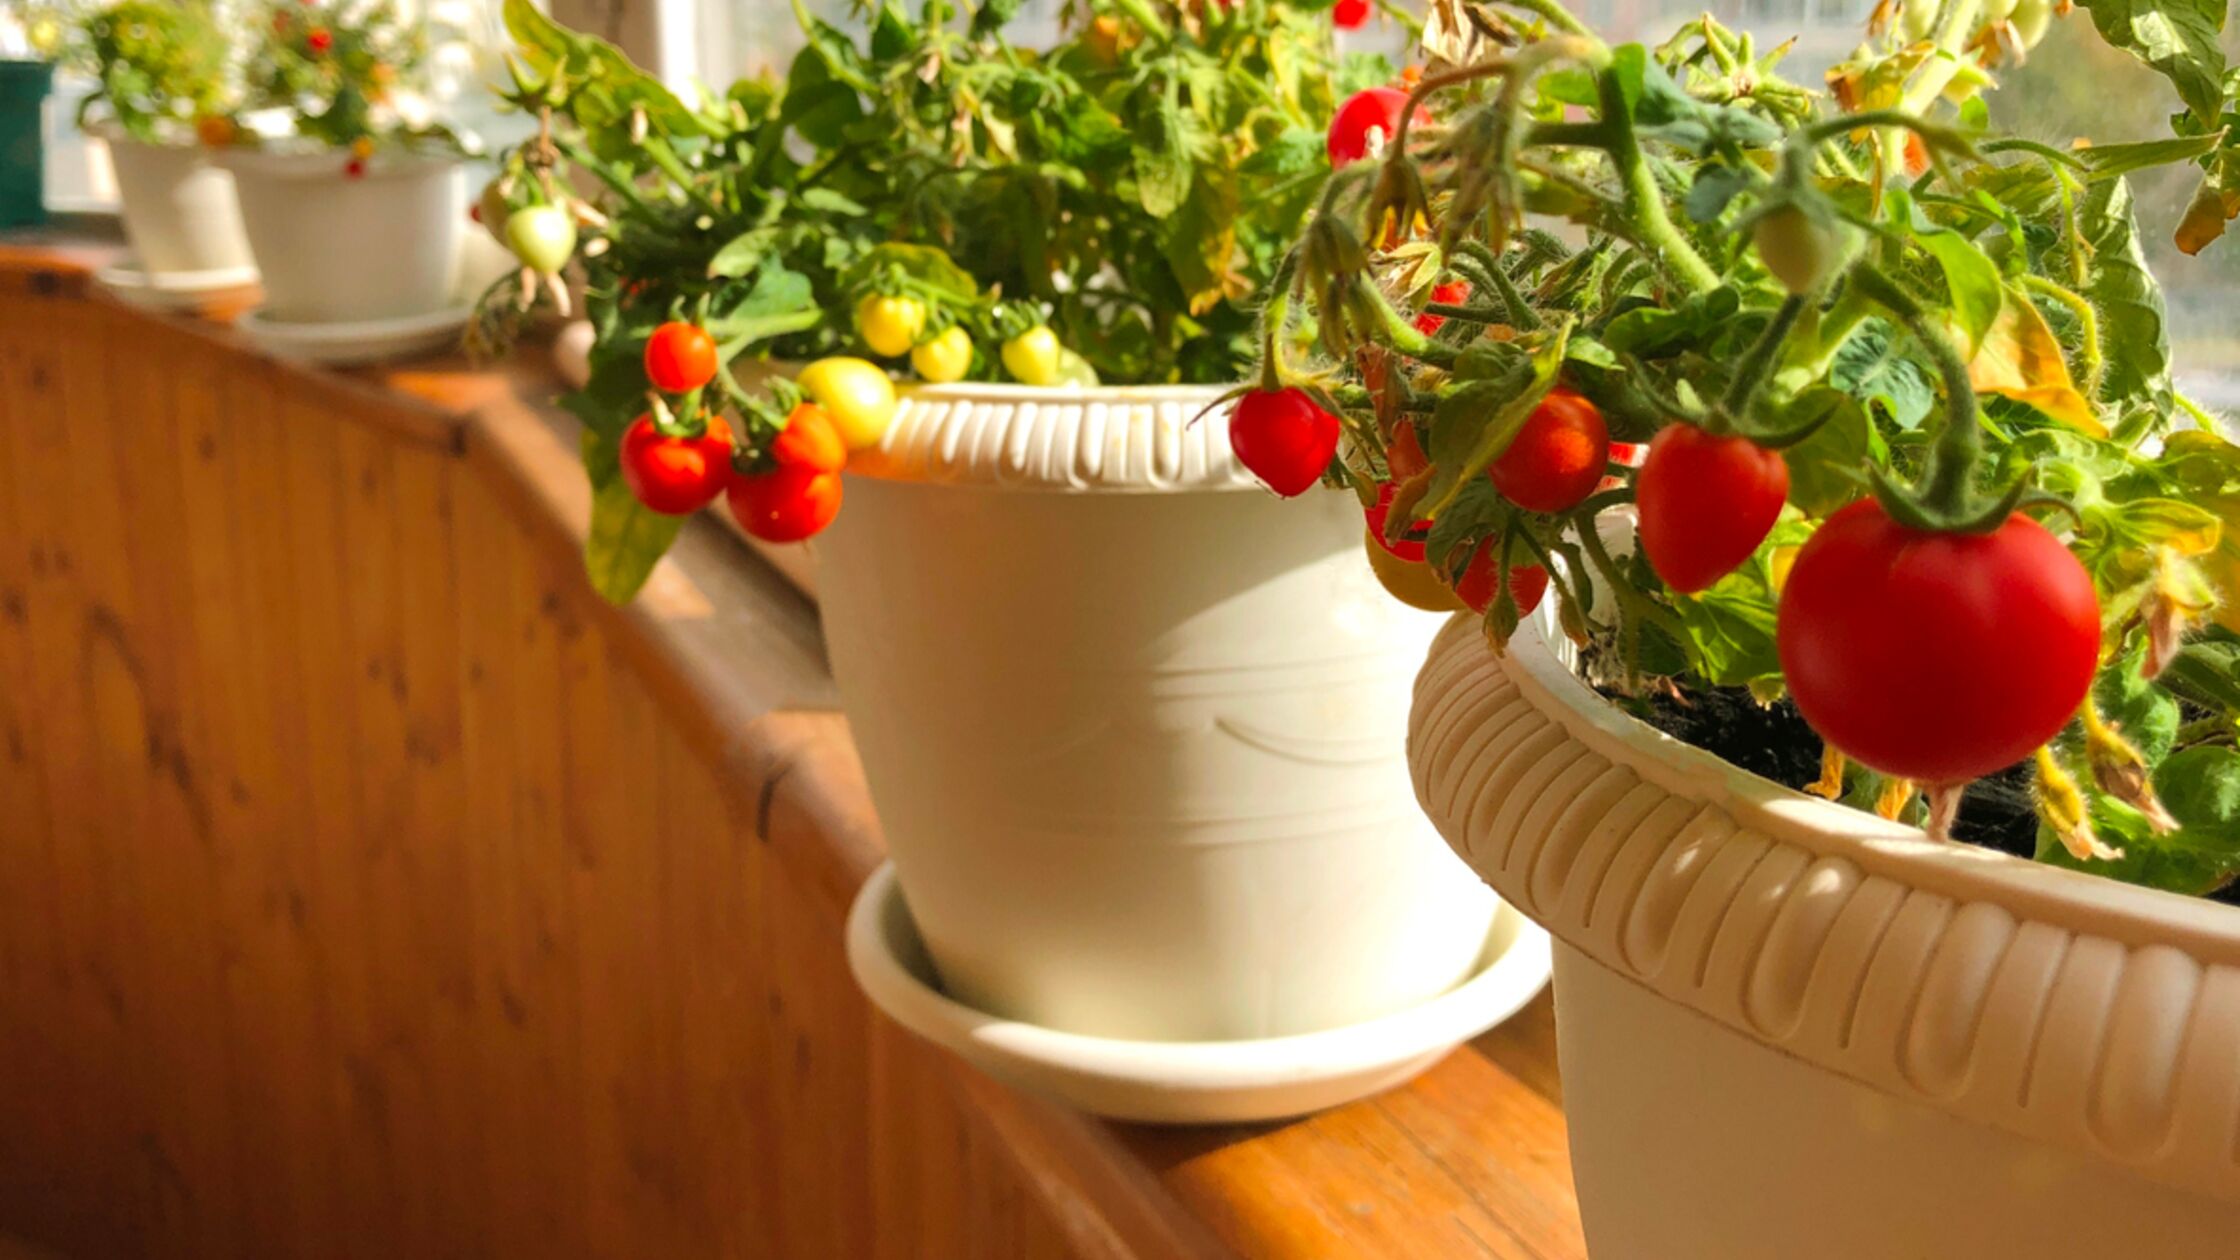 Gemüse in der Wohnung anbauen: So geht es ohne Balkon